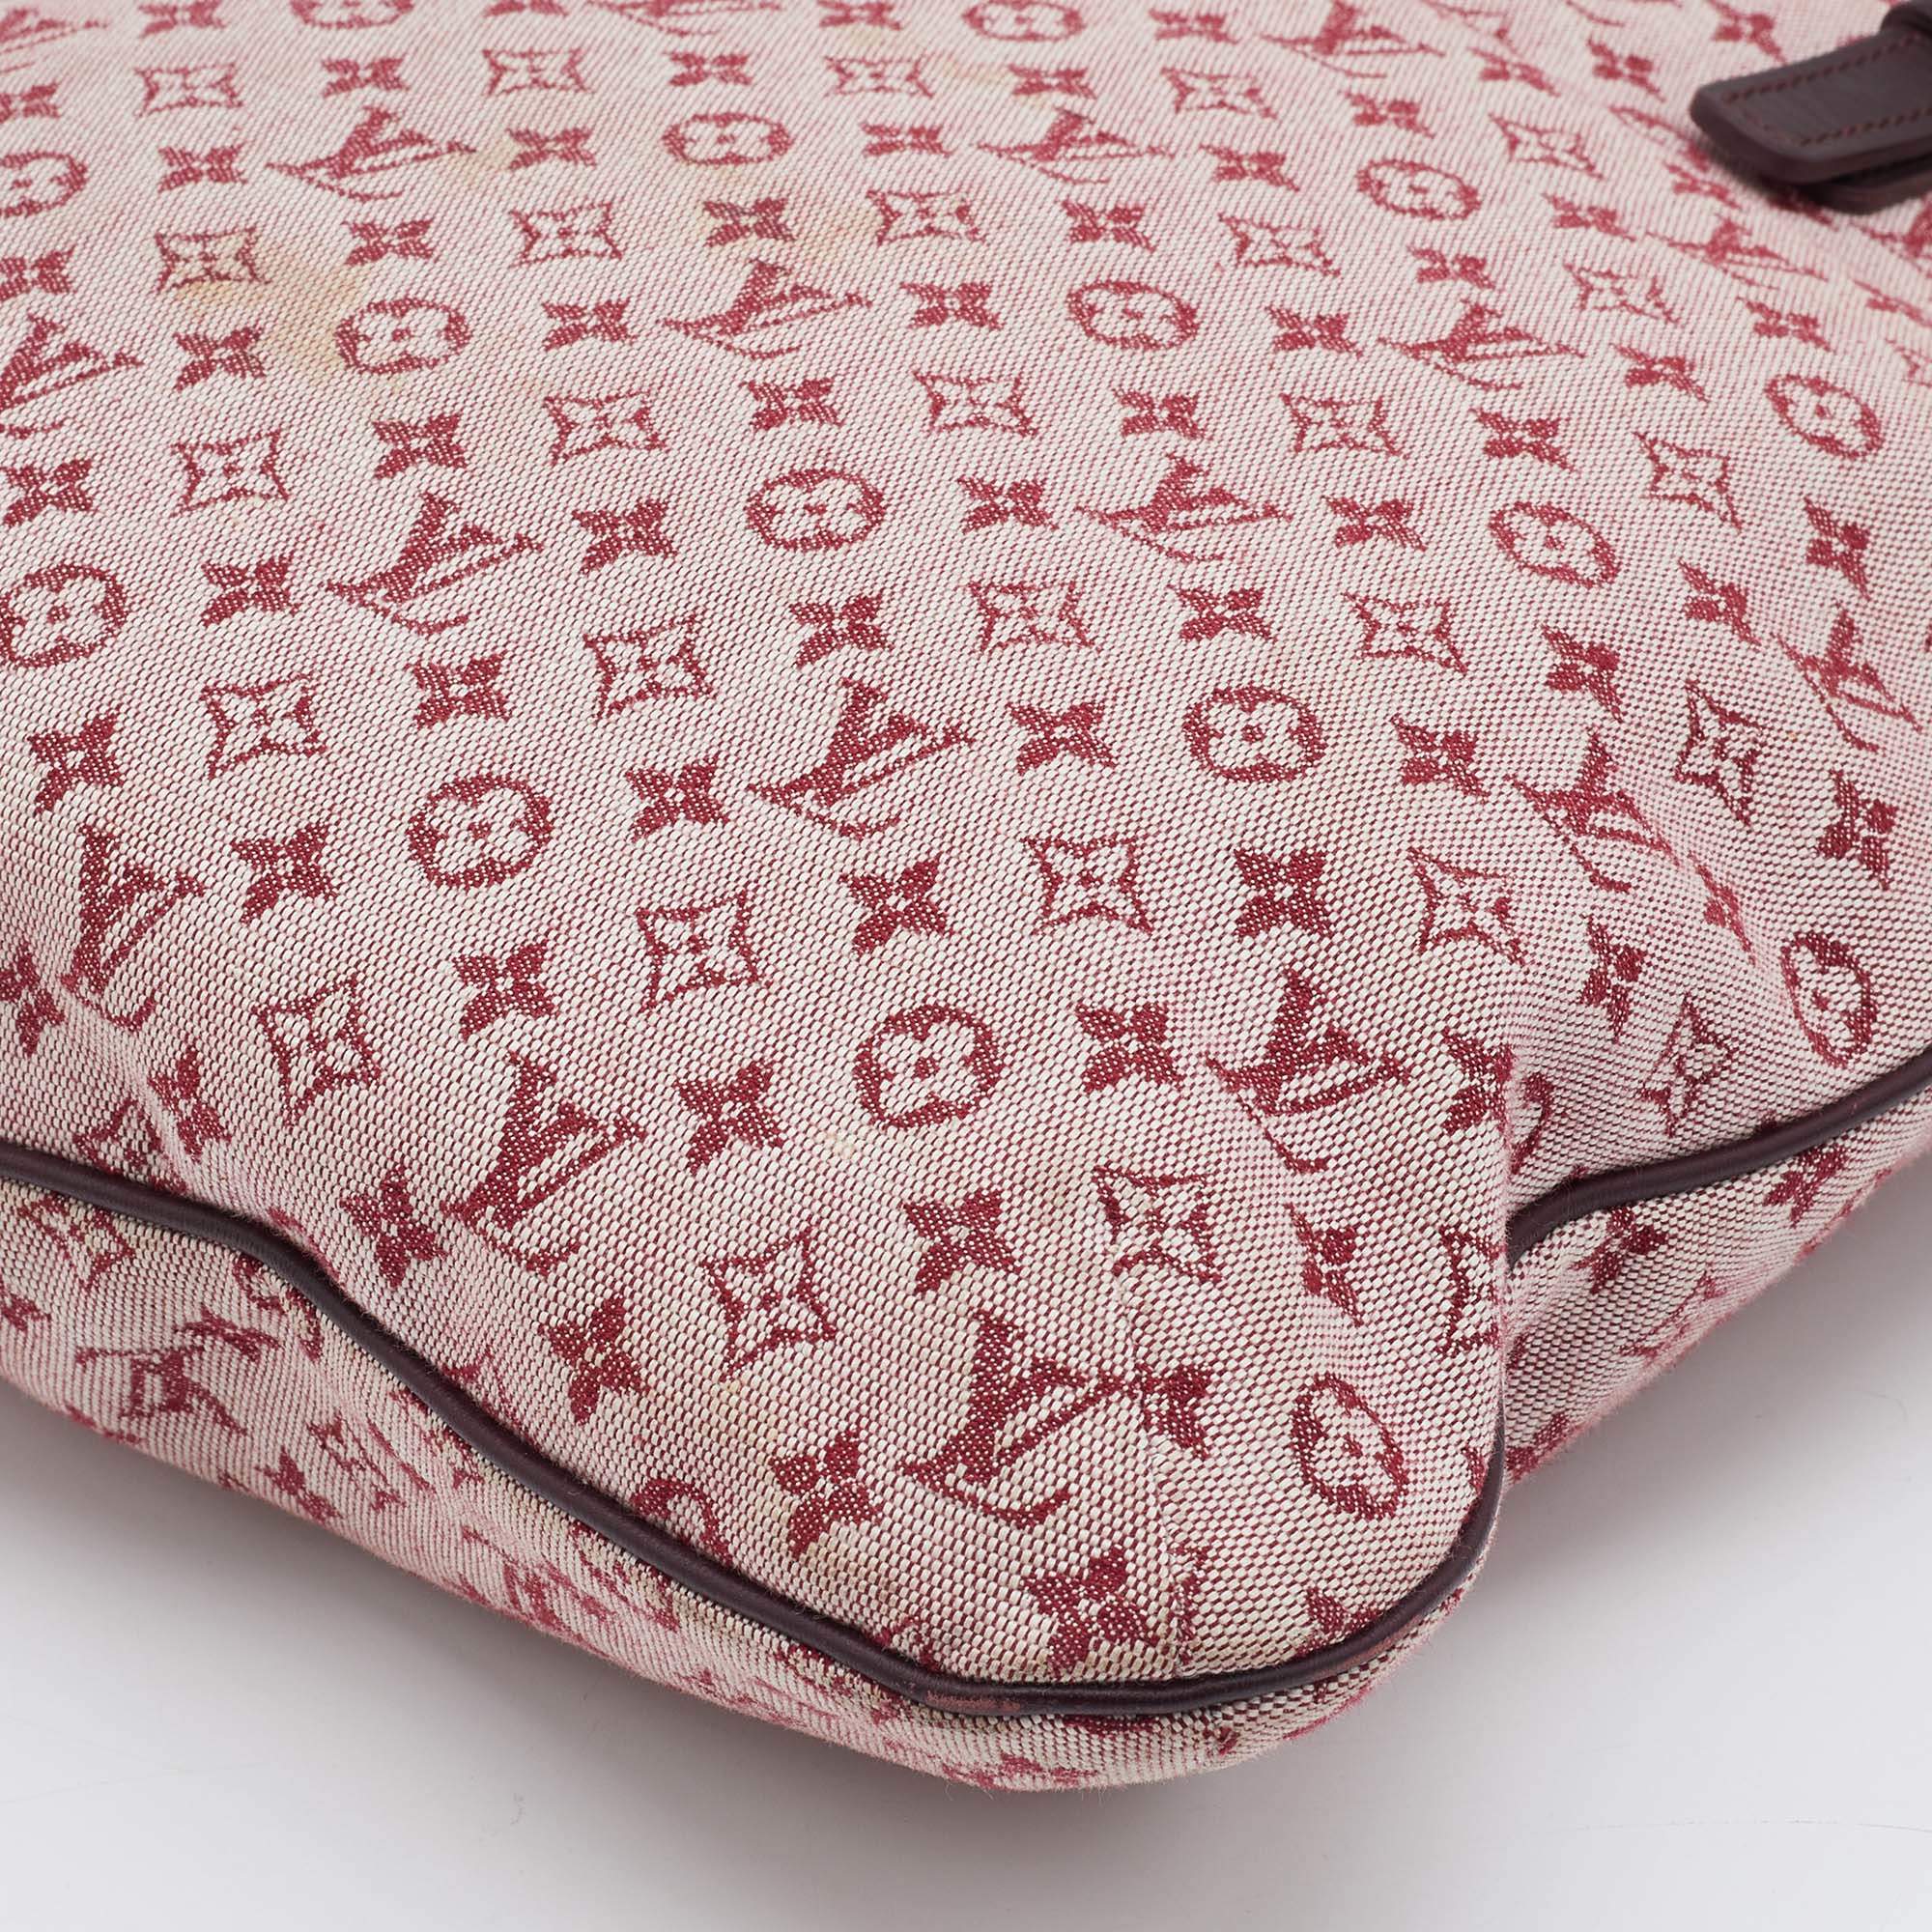 Louis Vuitton Cherry Monogram Mini Lin Francoise Shoulder Bag w